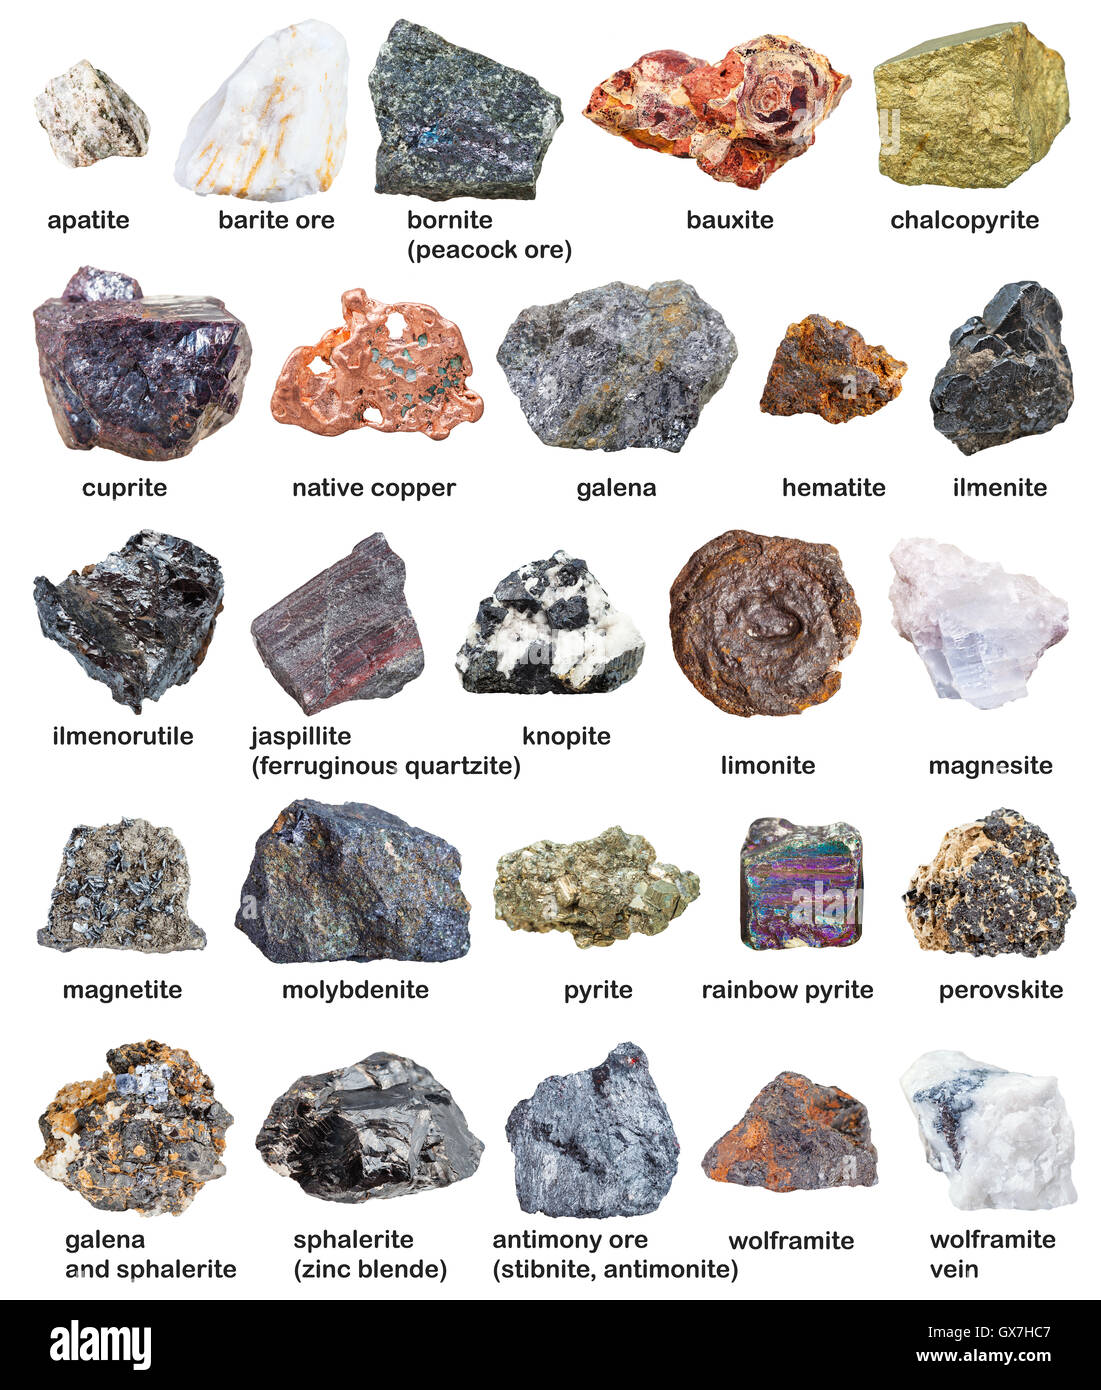 Minerali grezzi immagini e fotografie stock ad alta risoluzione - Alamy